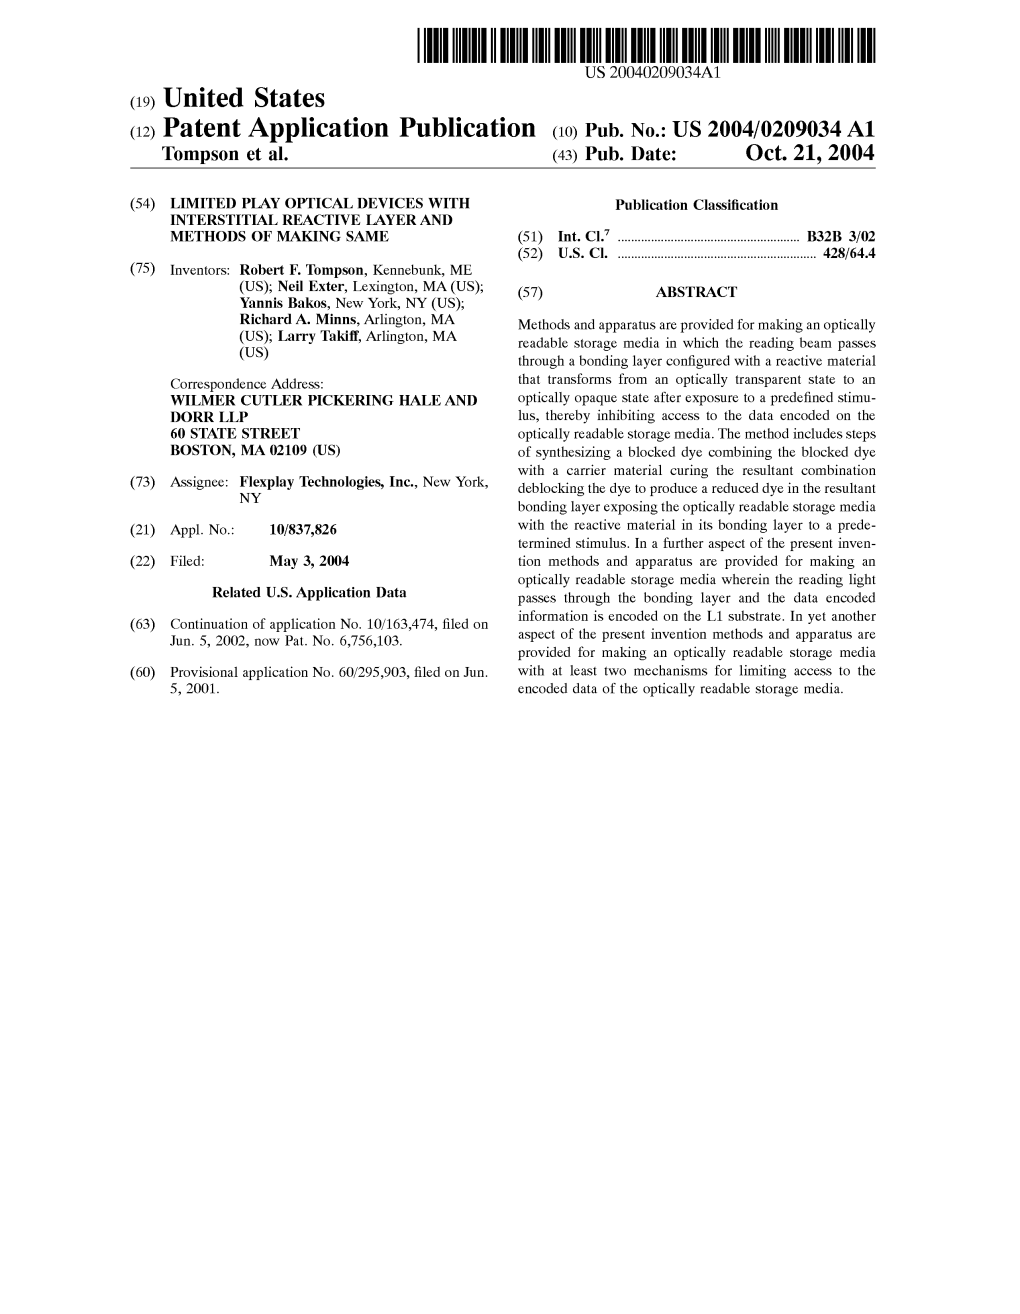 (12) Patent Application Publication (10) Pub. No.: US 2004/0209034 A1 Tompson Et Al